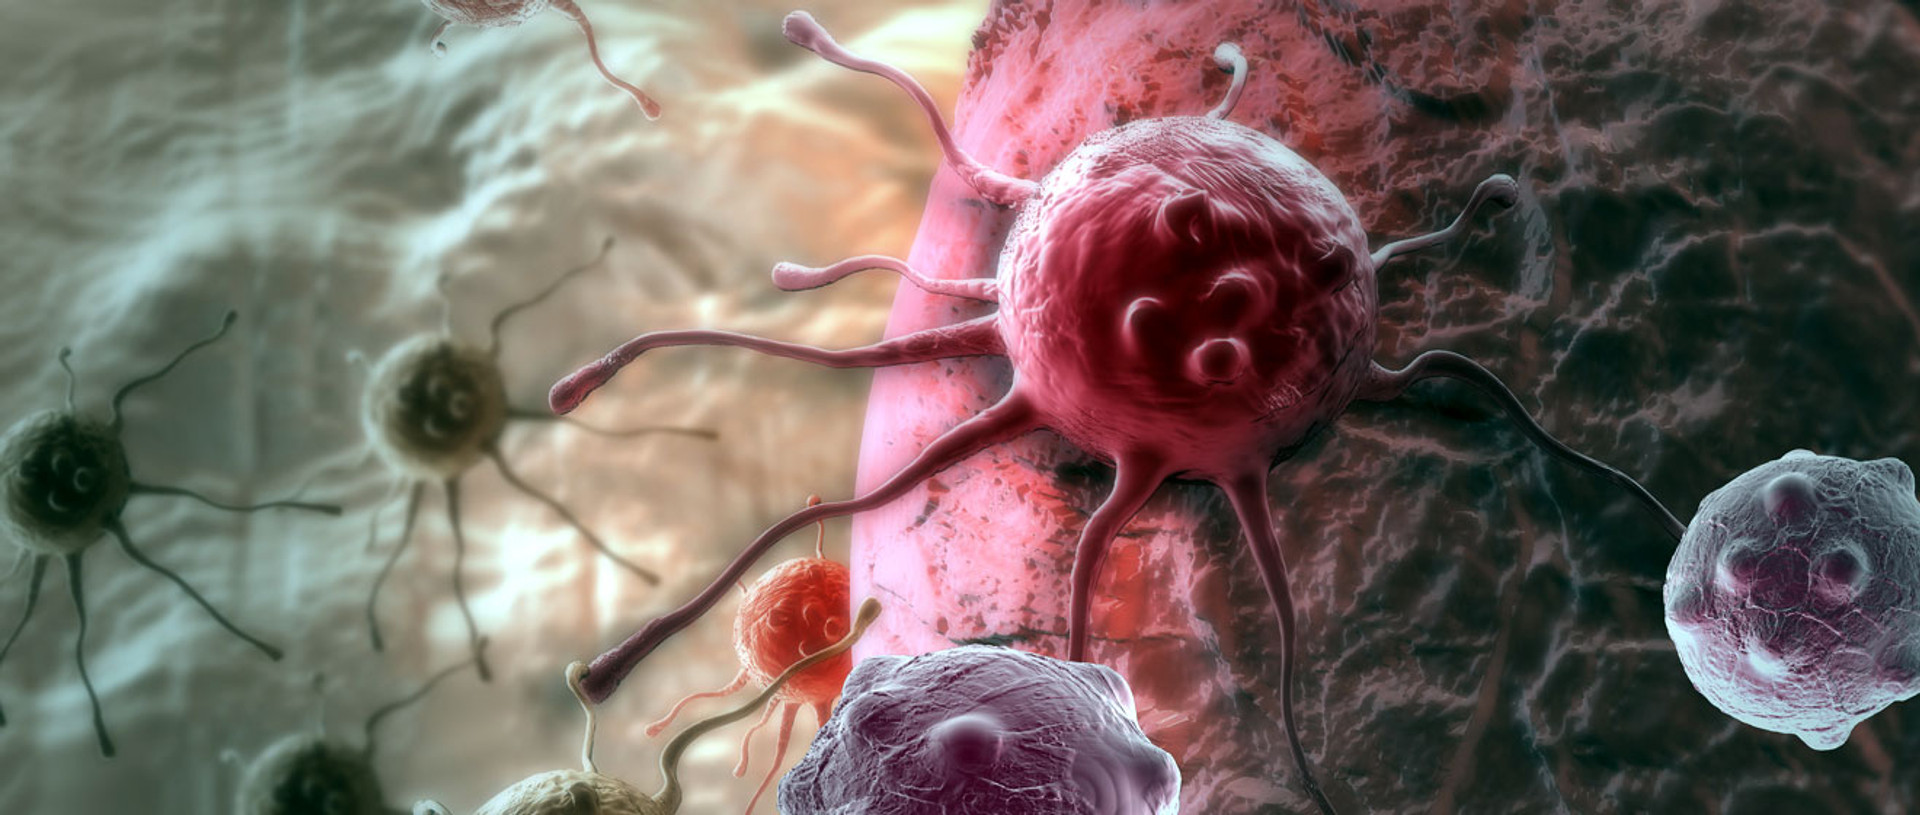 Щоб з раком боровся сам імунітет. Вчені пояснюють Нобель-2018 у медицині